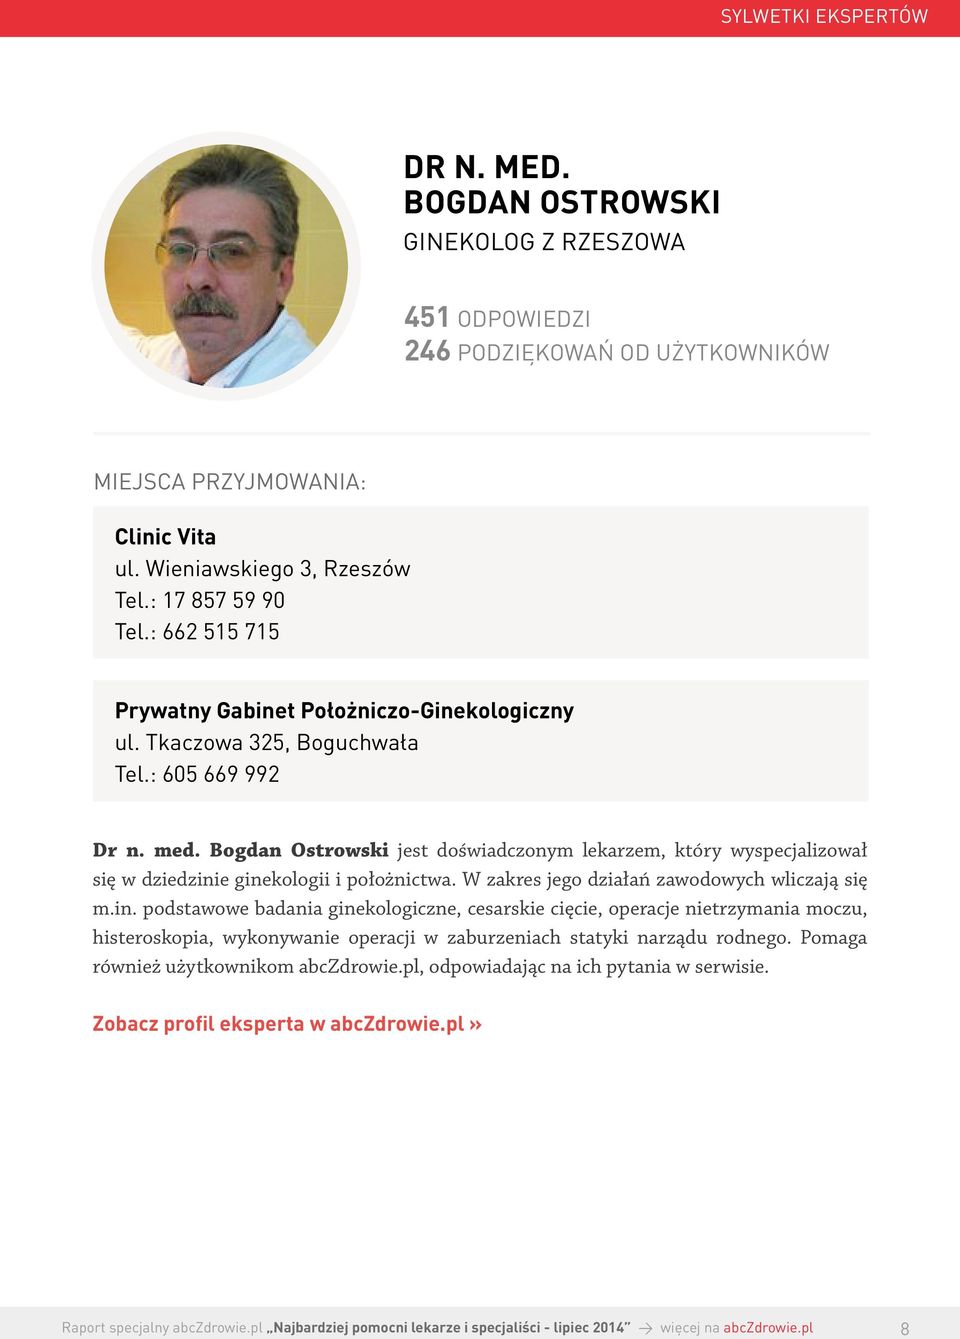 Bogdan Ostrowski jest doświadczonym lekarzem, który wyspecjalizował się w dziedzini